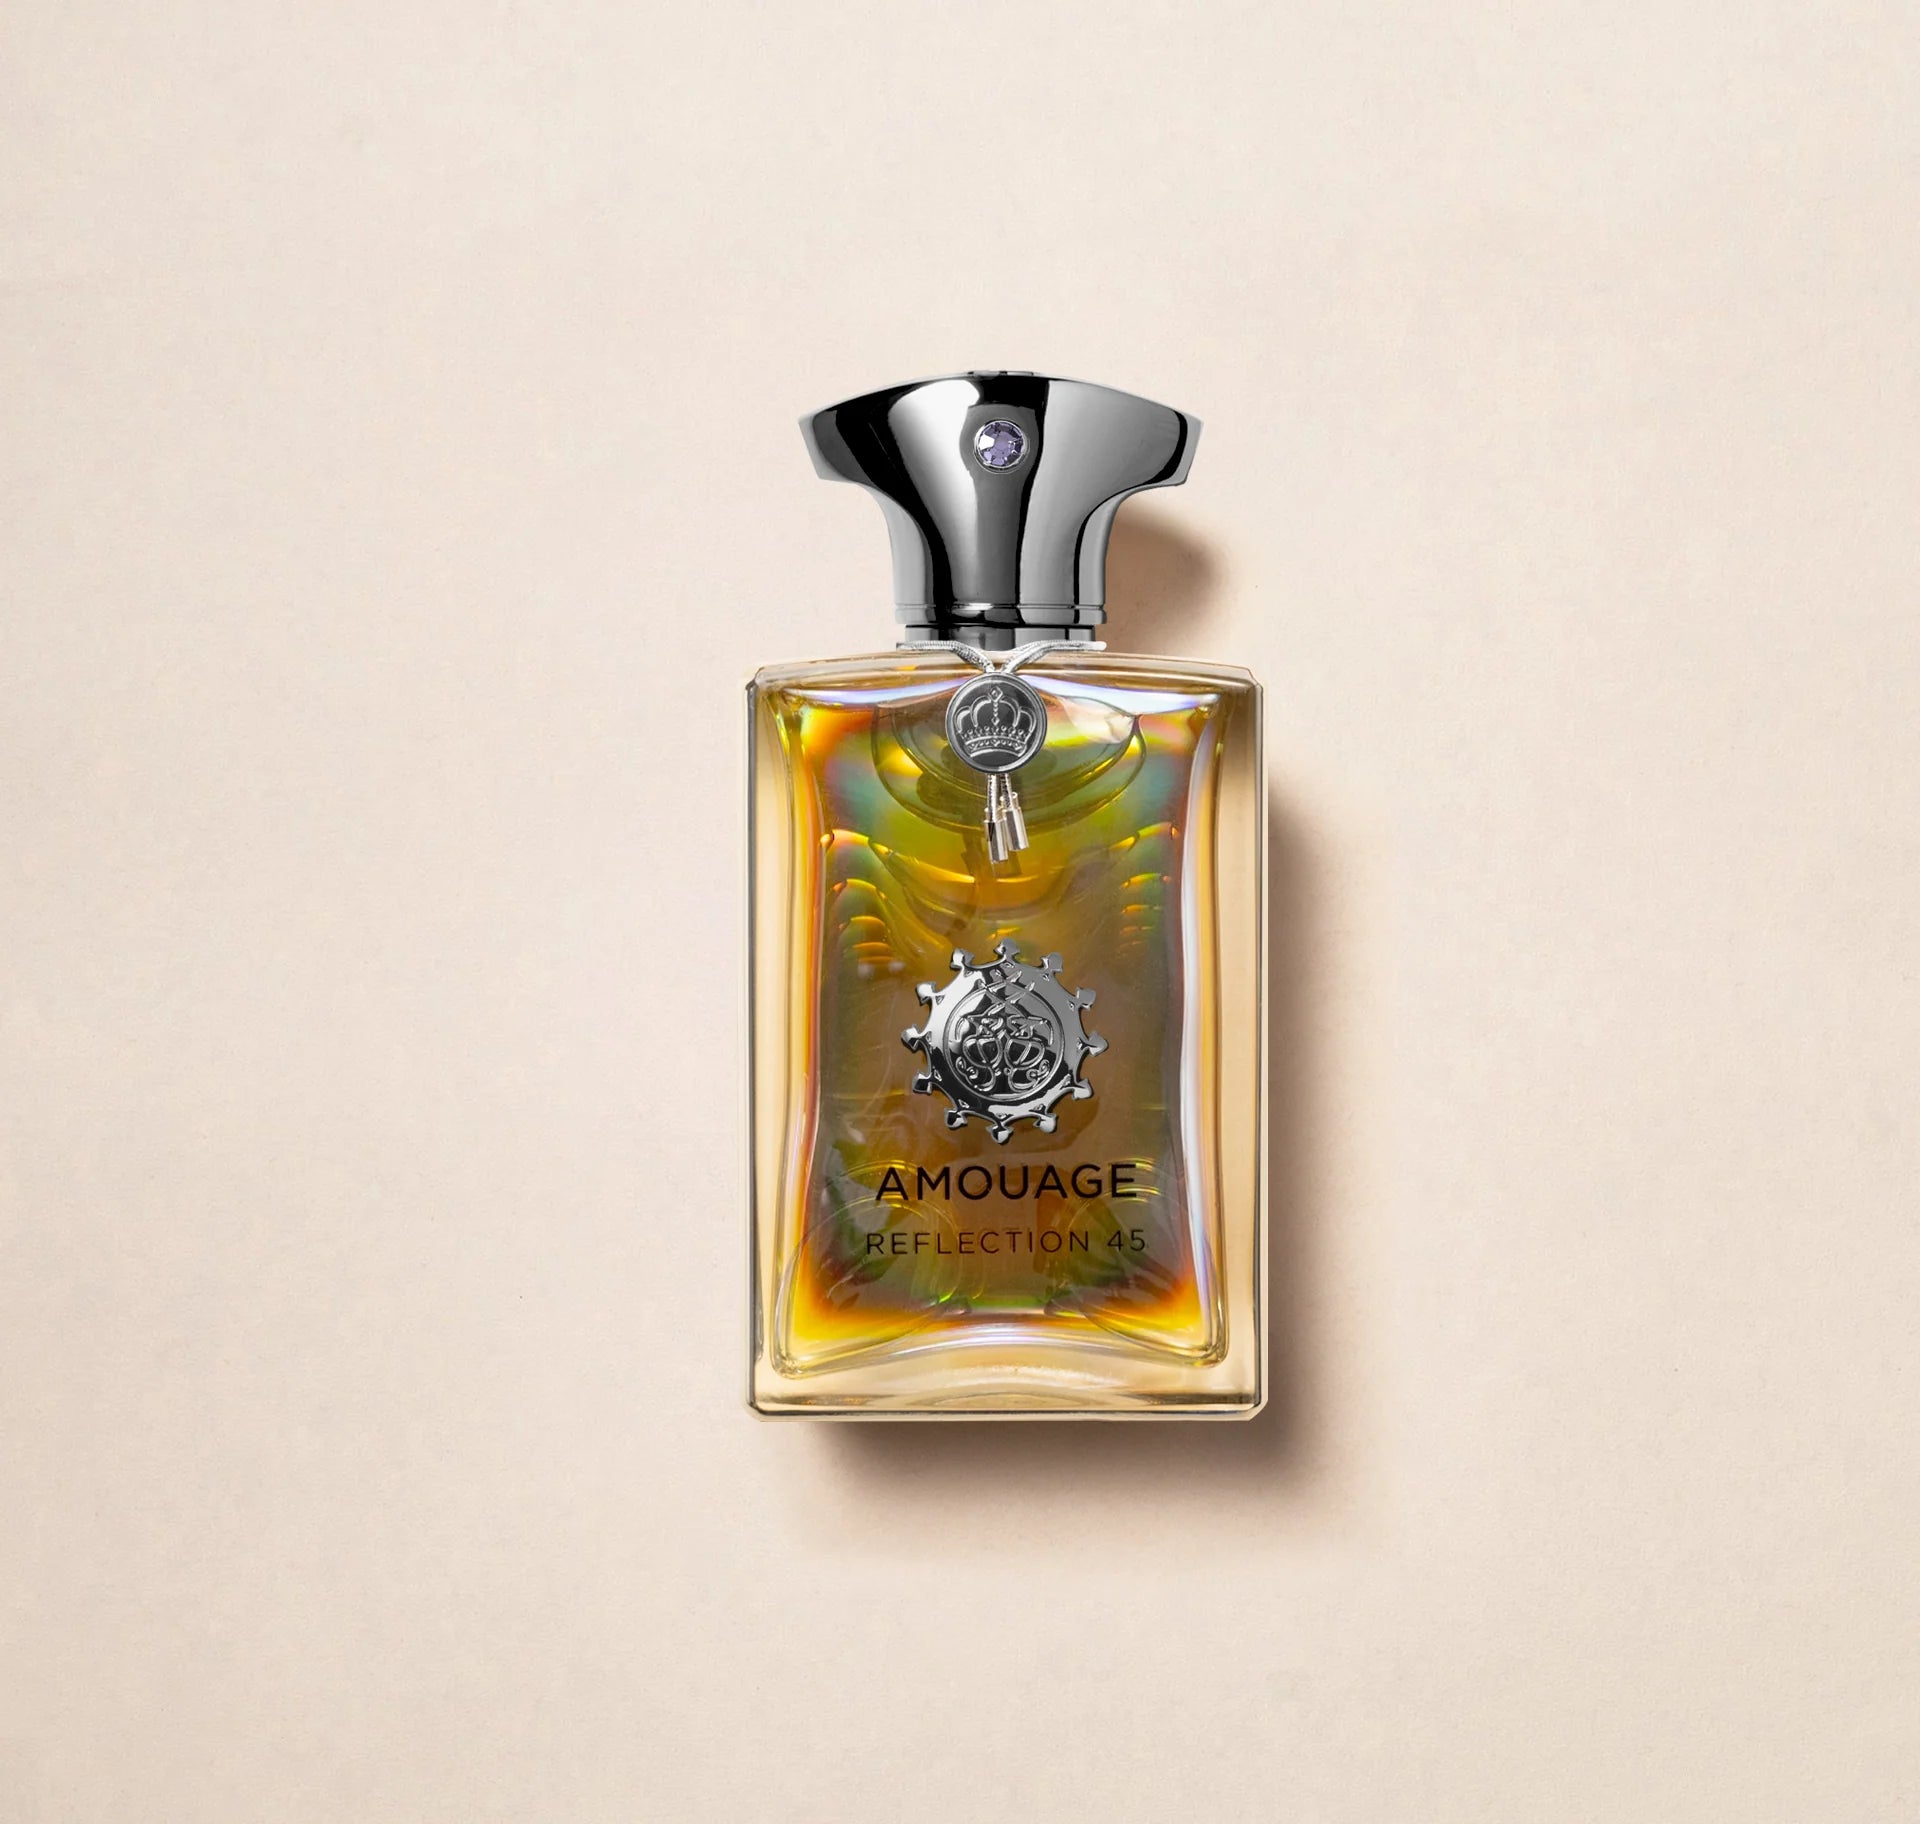 Durchsichtiges Parfüm Flakon von Amouage Reflection 45 Man mit chrom silbernem Deckel